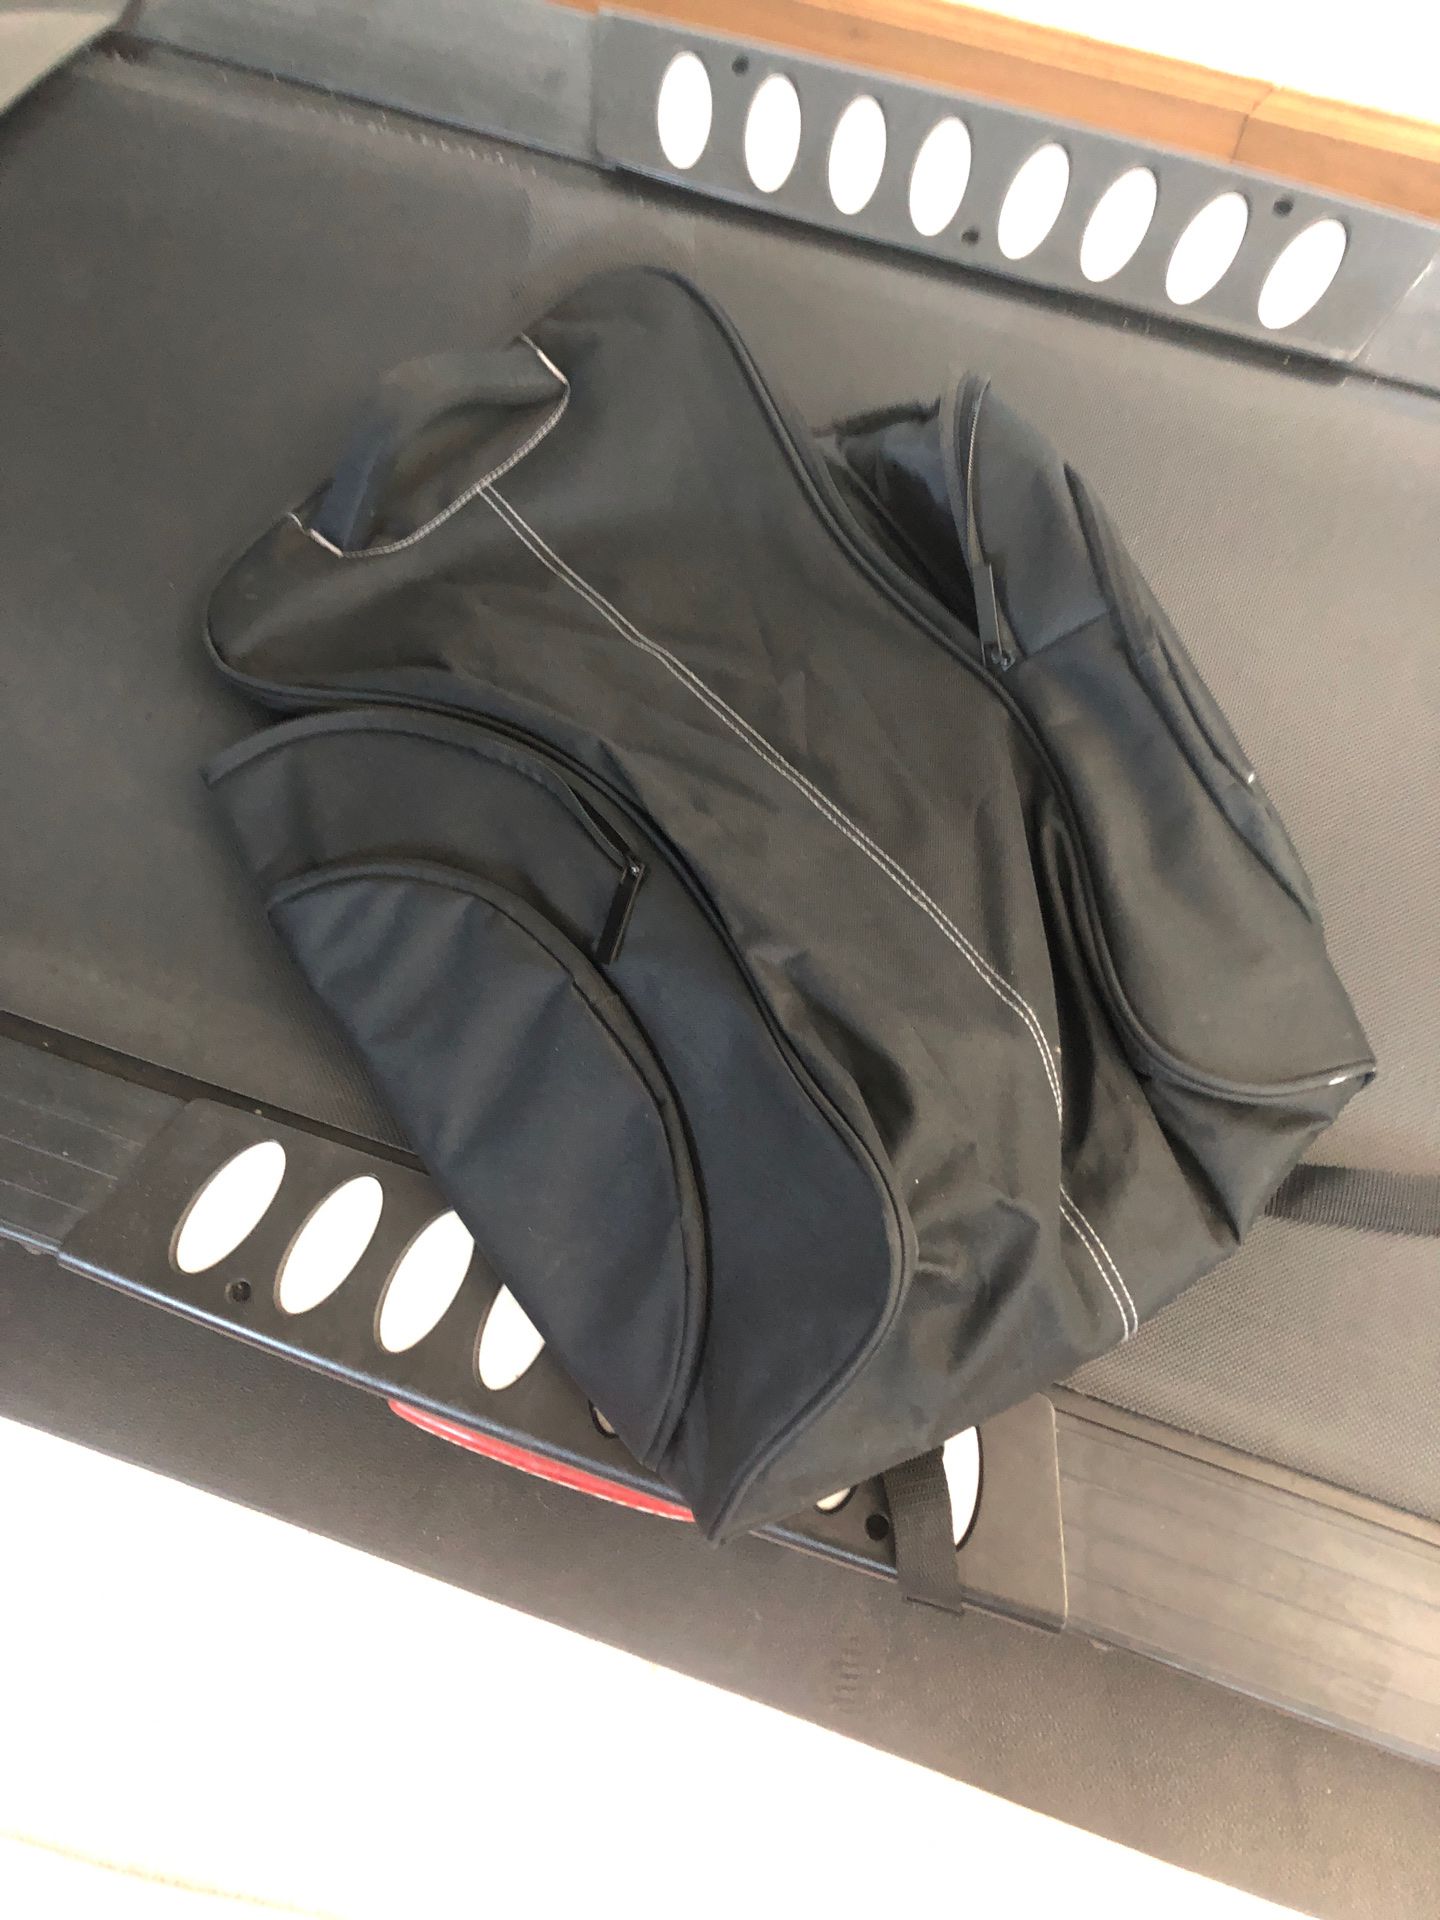 Backpack duffle bag.